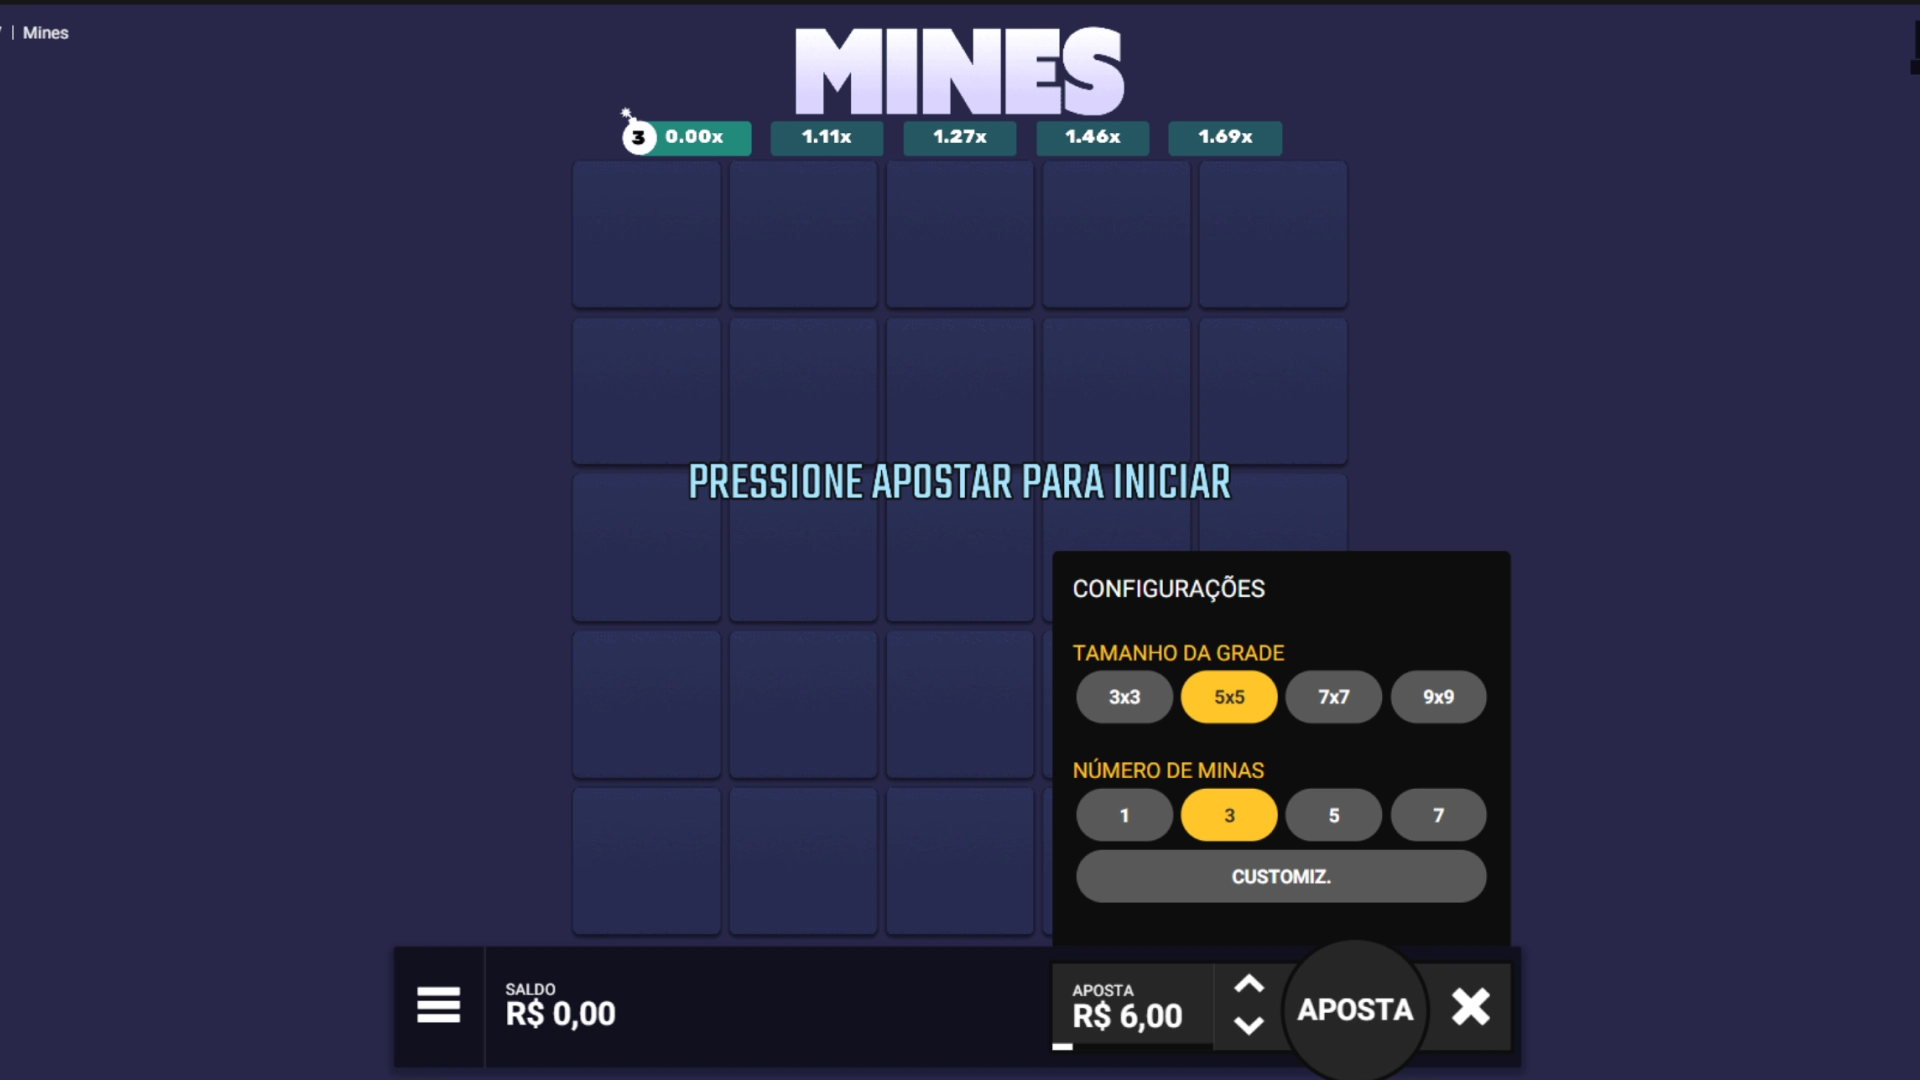 screenshot mostra tela com configurações e aposta do jogo da bombinha Mines